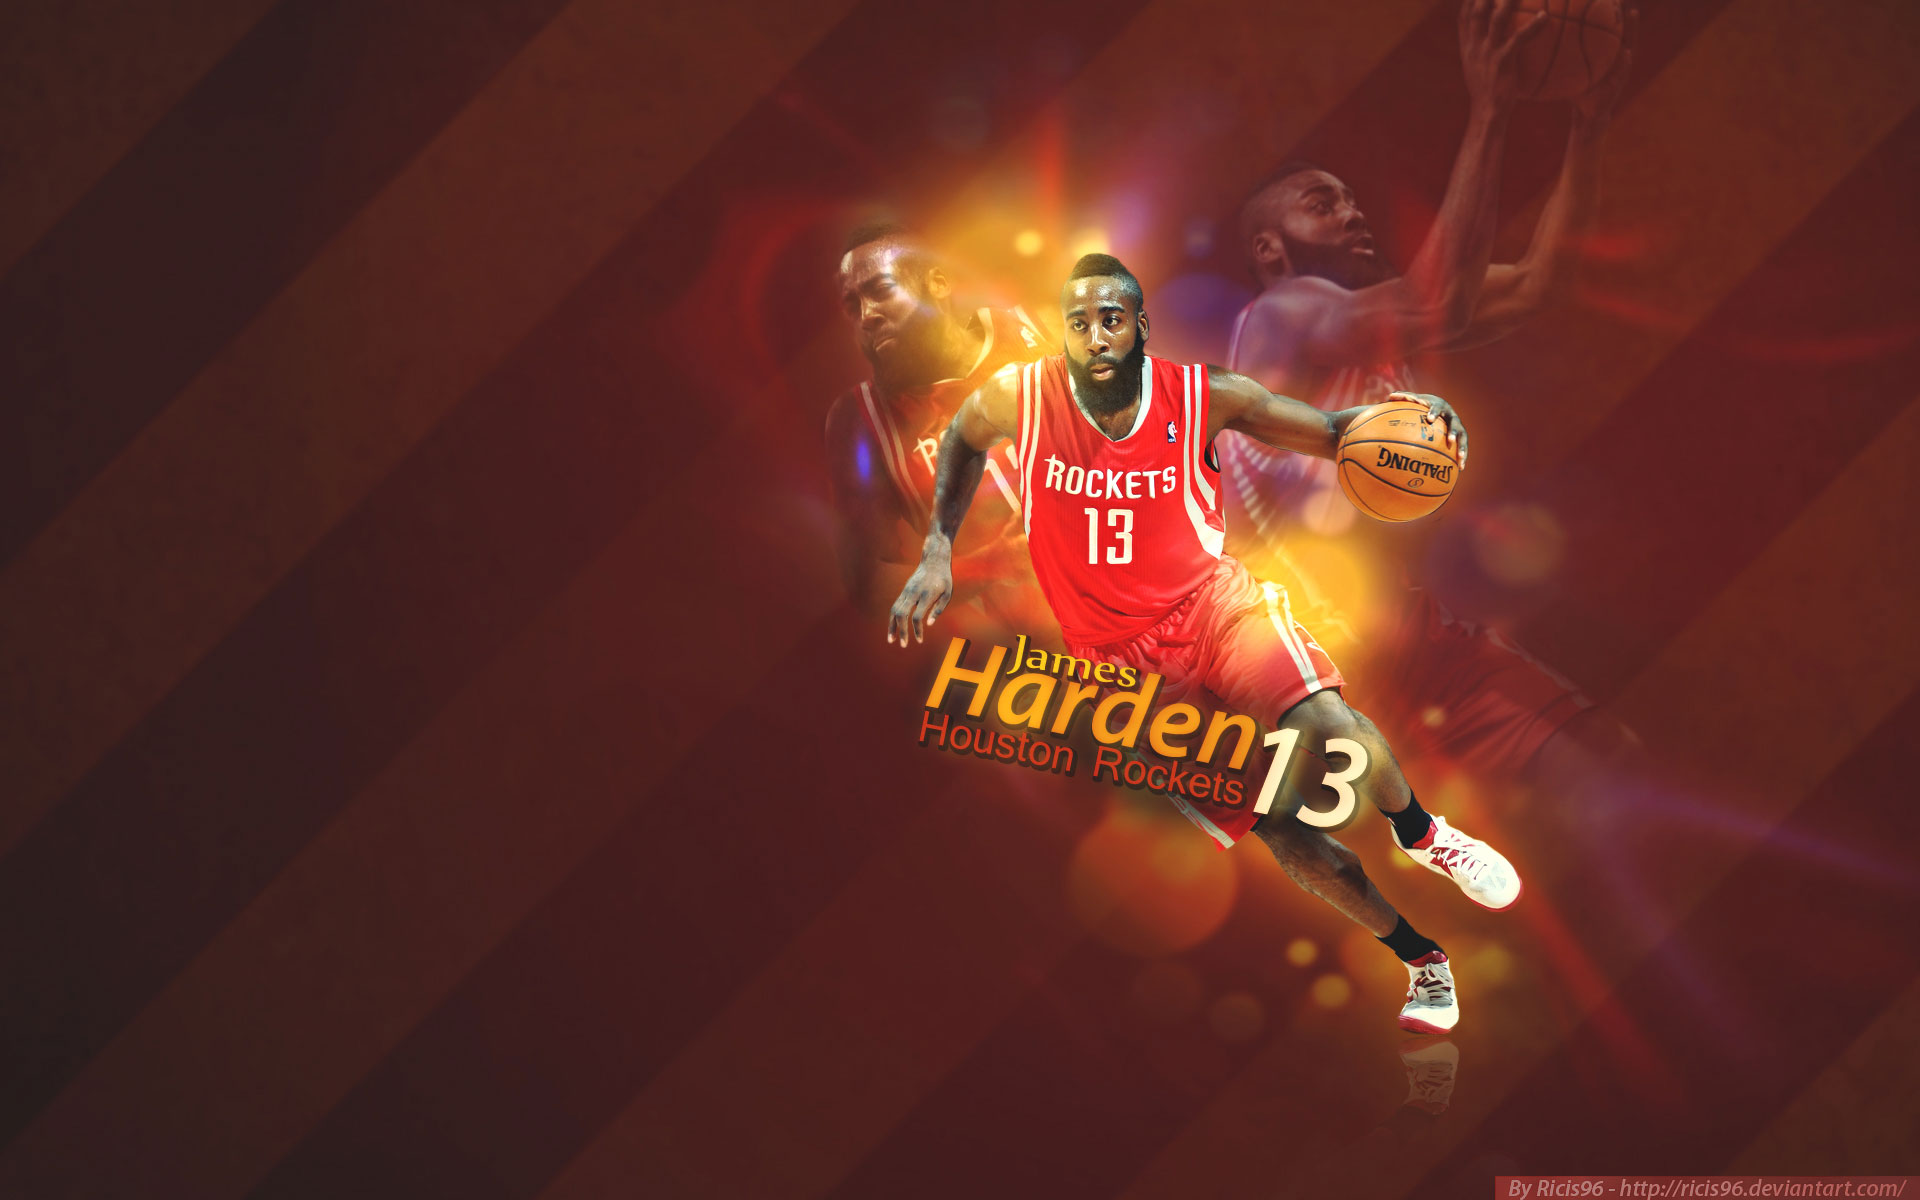 James Harden Rockets HD Wallpaper For Your Desktop Background Or